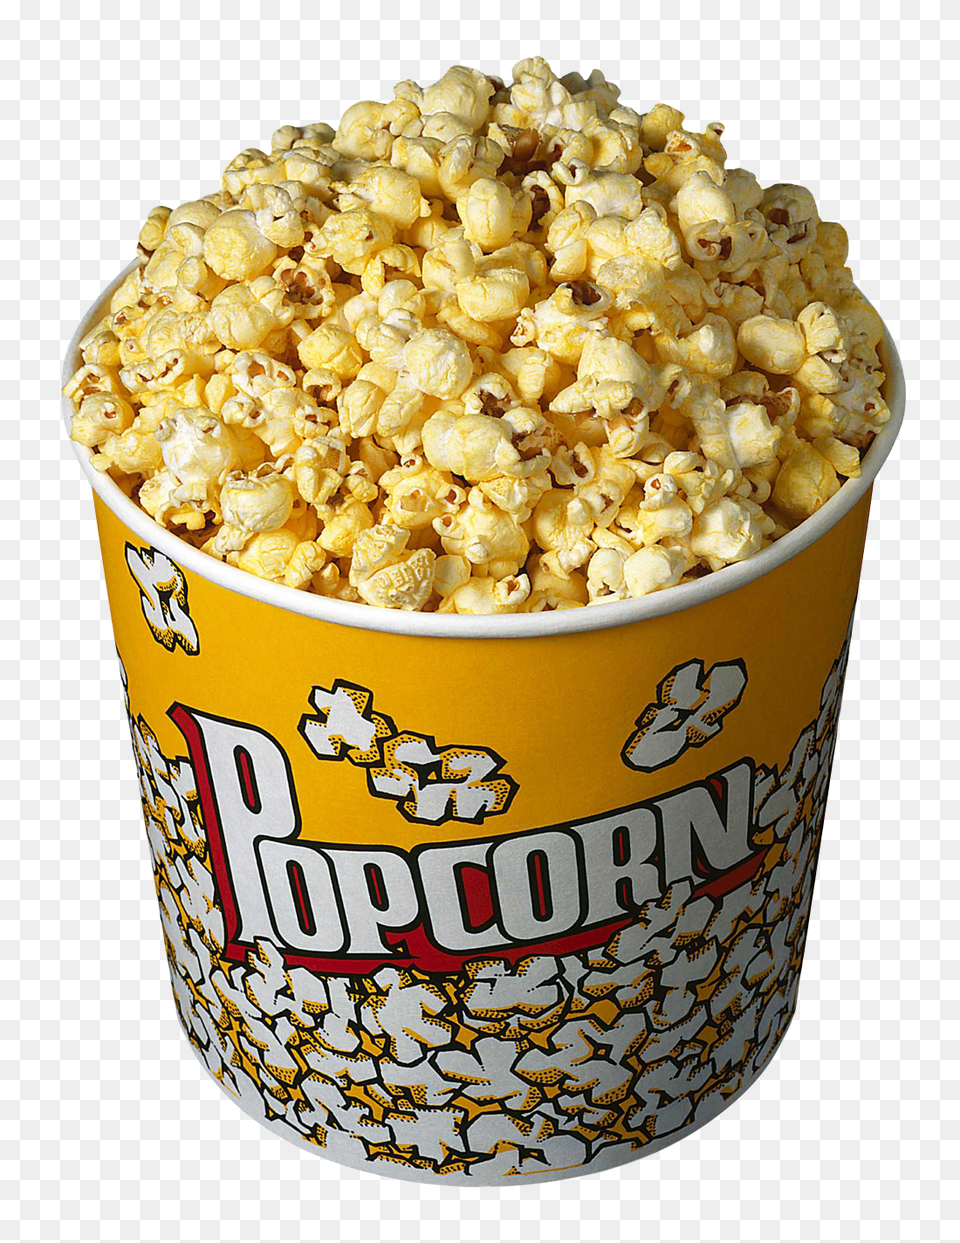 Pngpix Com Popcorn In Bucket Food, Snack, Cup Png Image